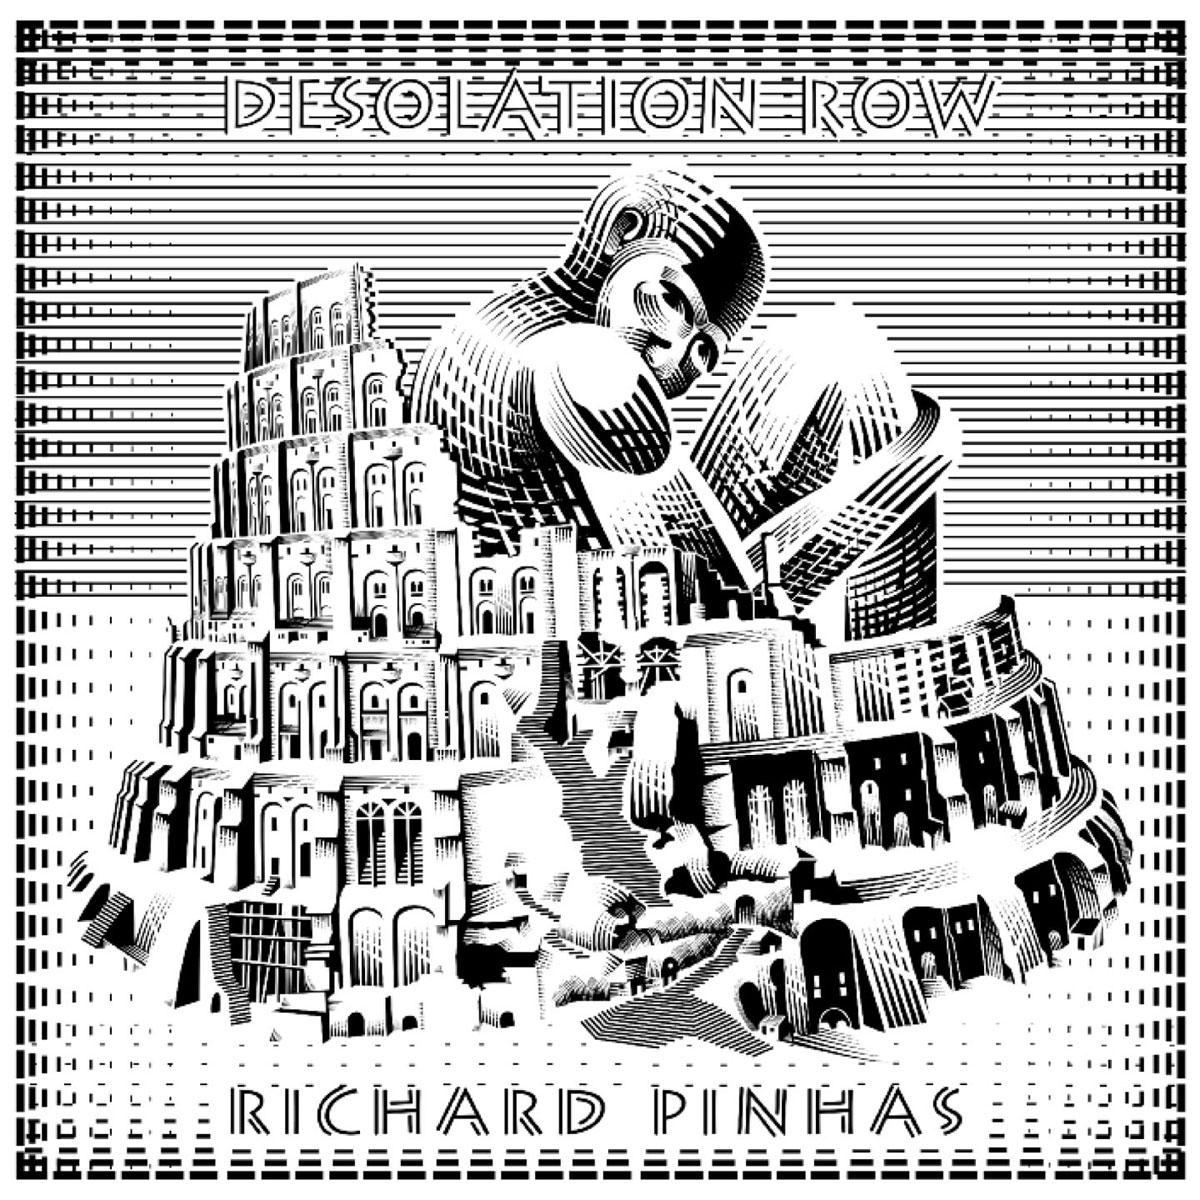 Richard Pinhas